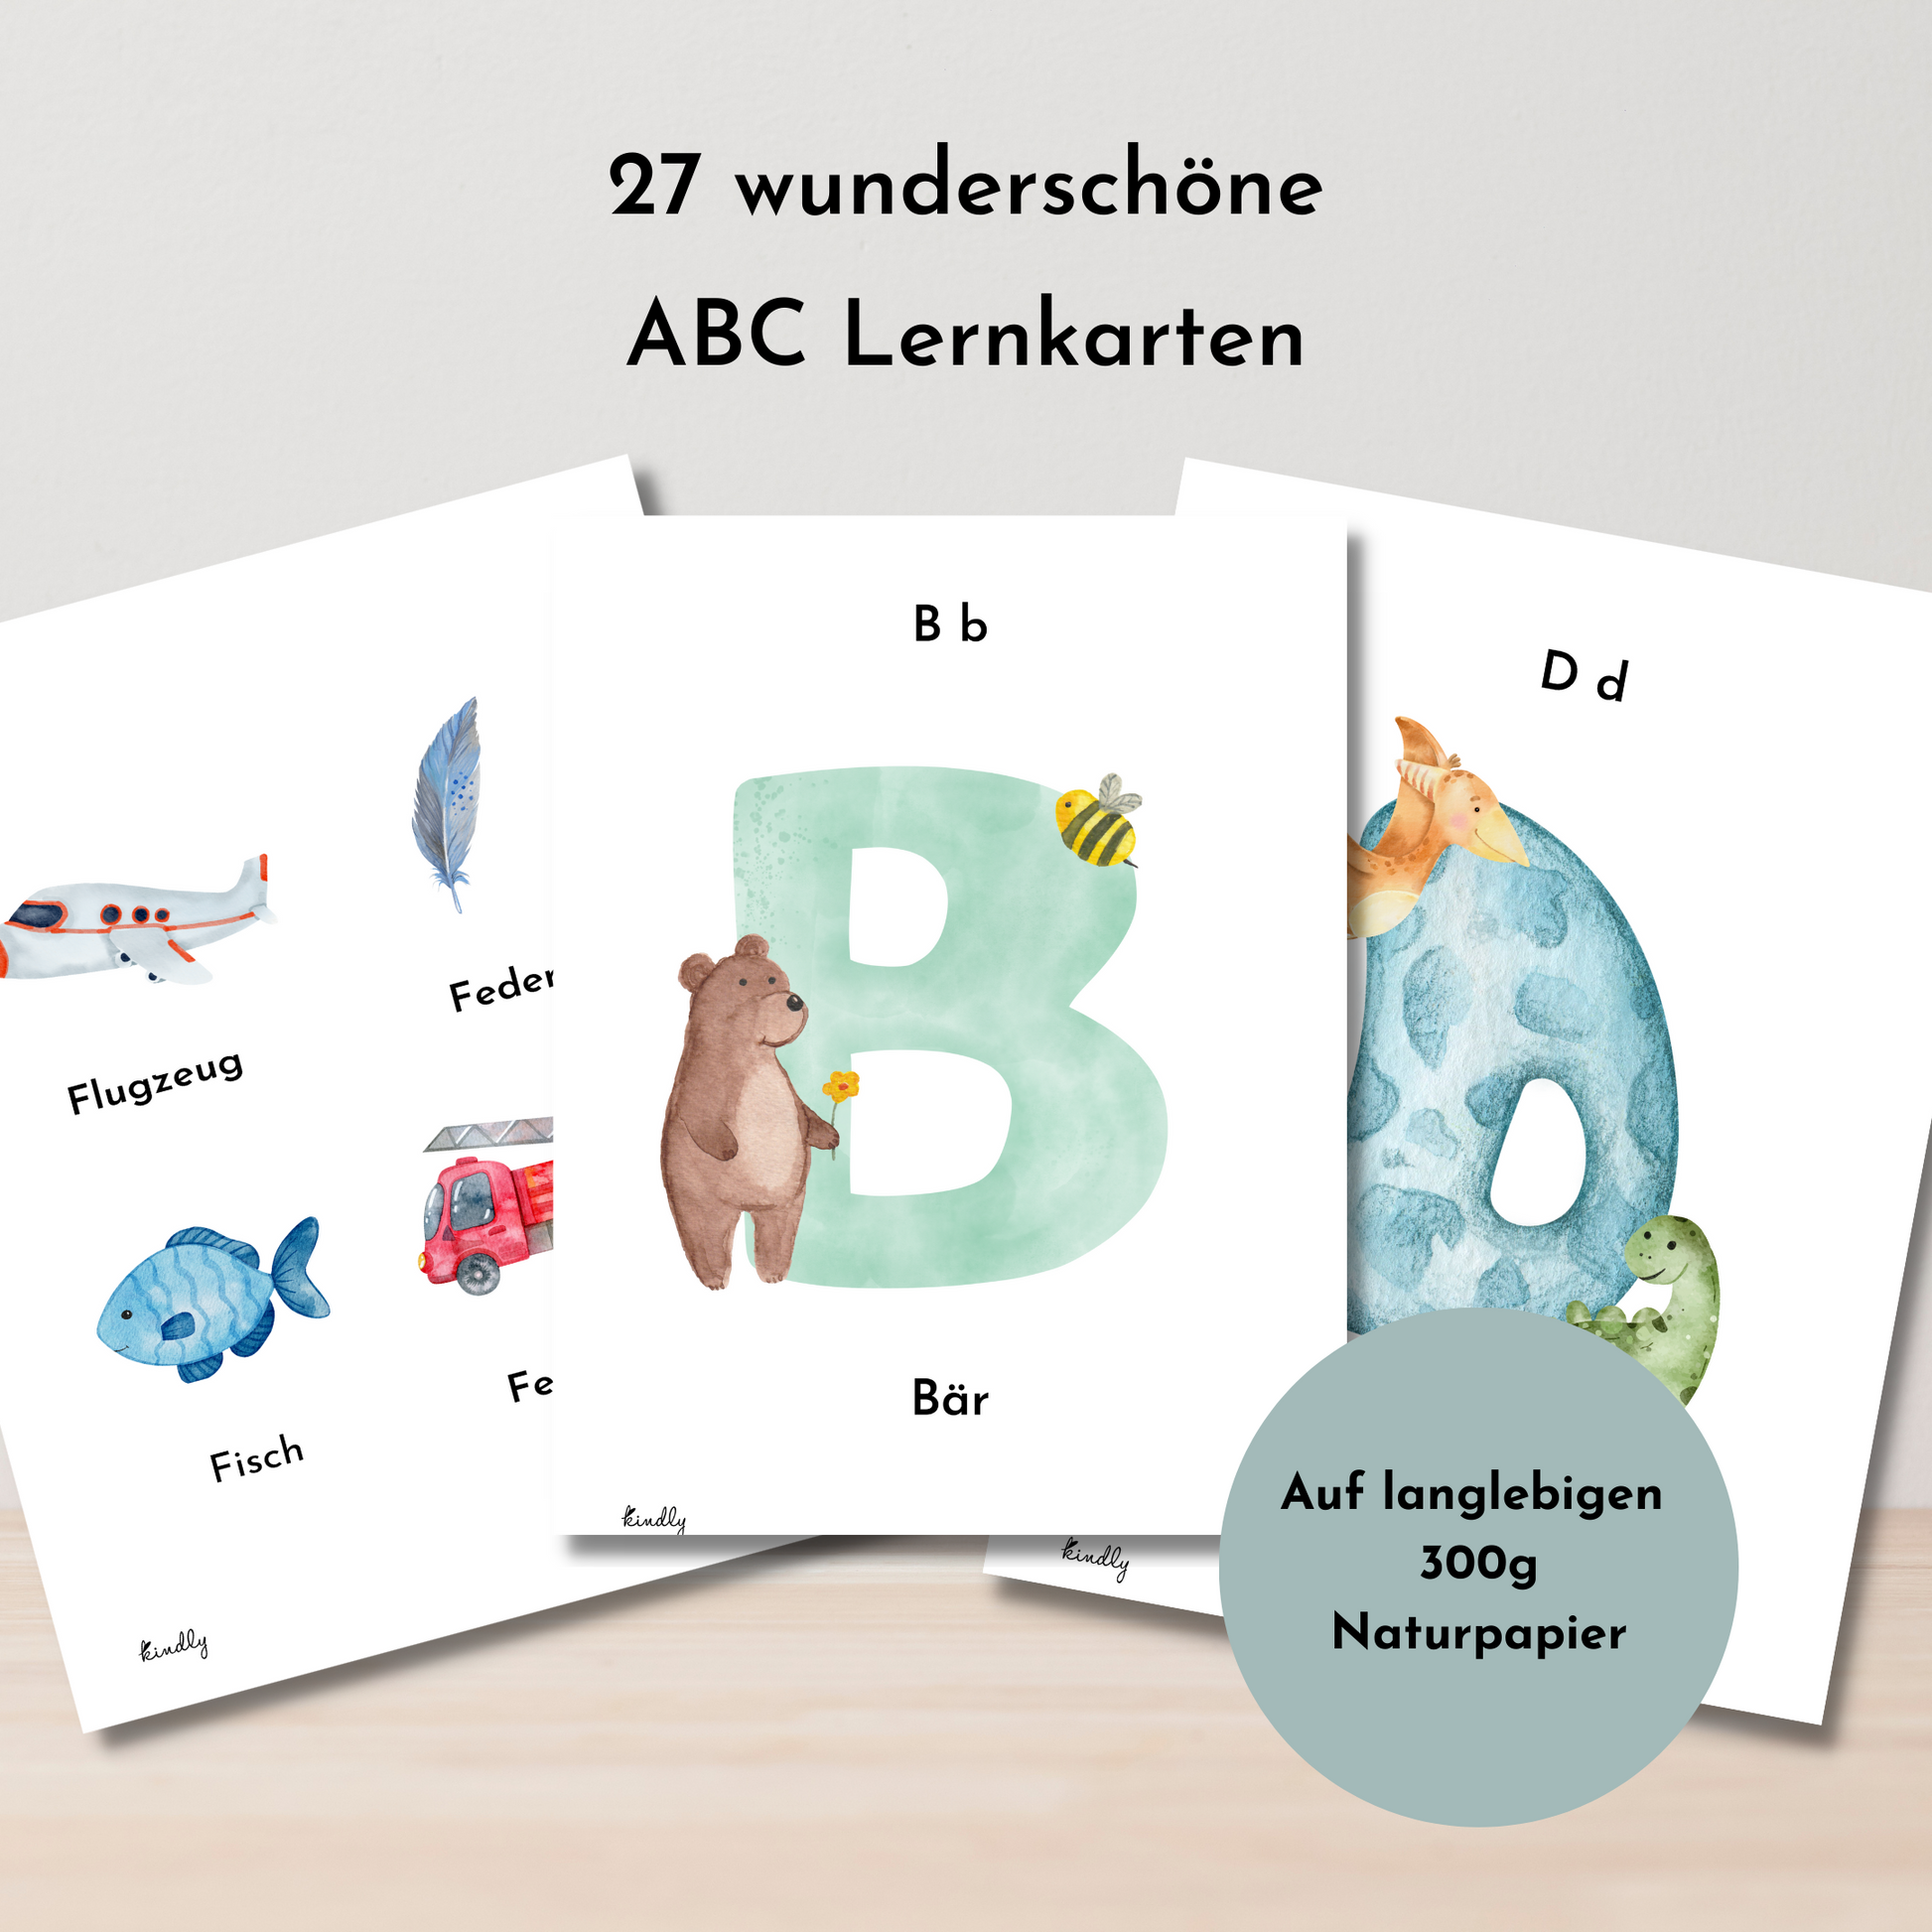 Interaktive ABC Karten - Alphabet spielerisch entdecken